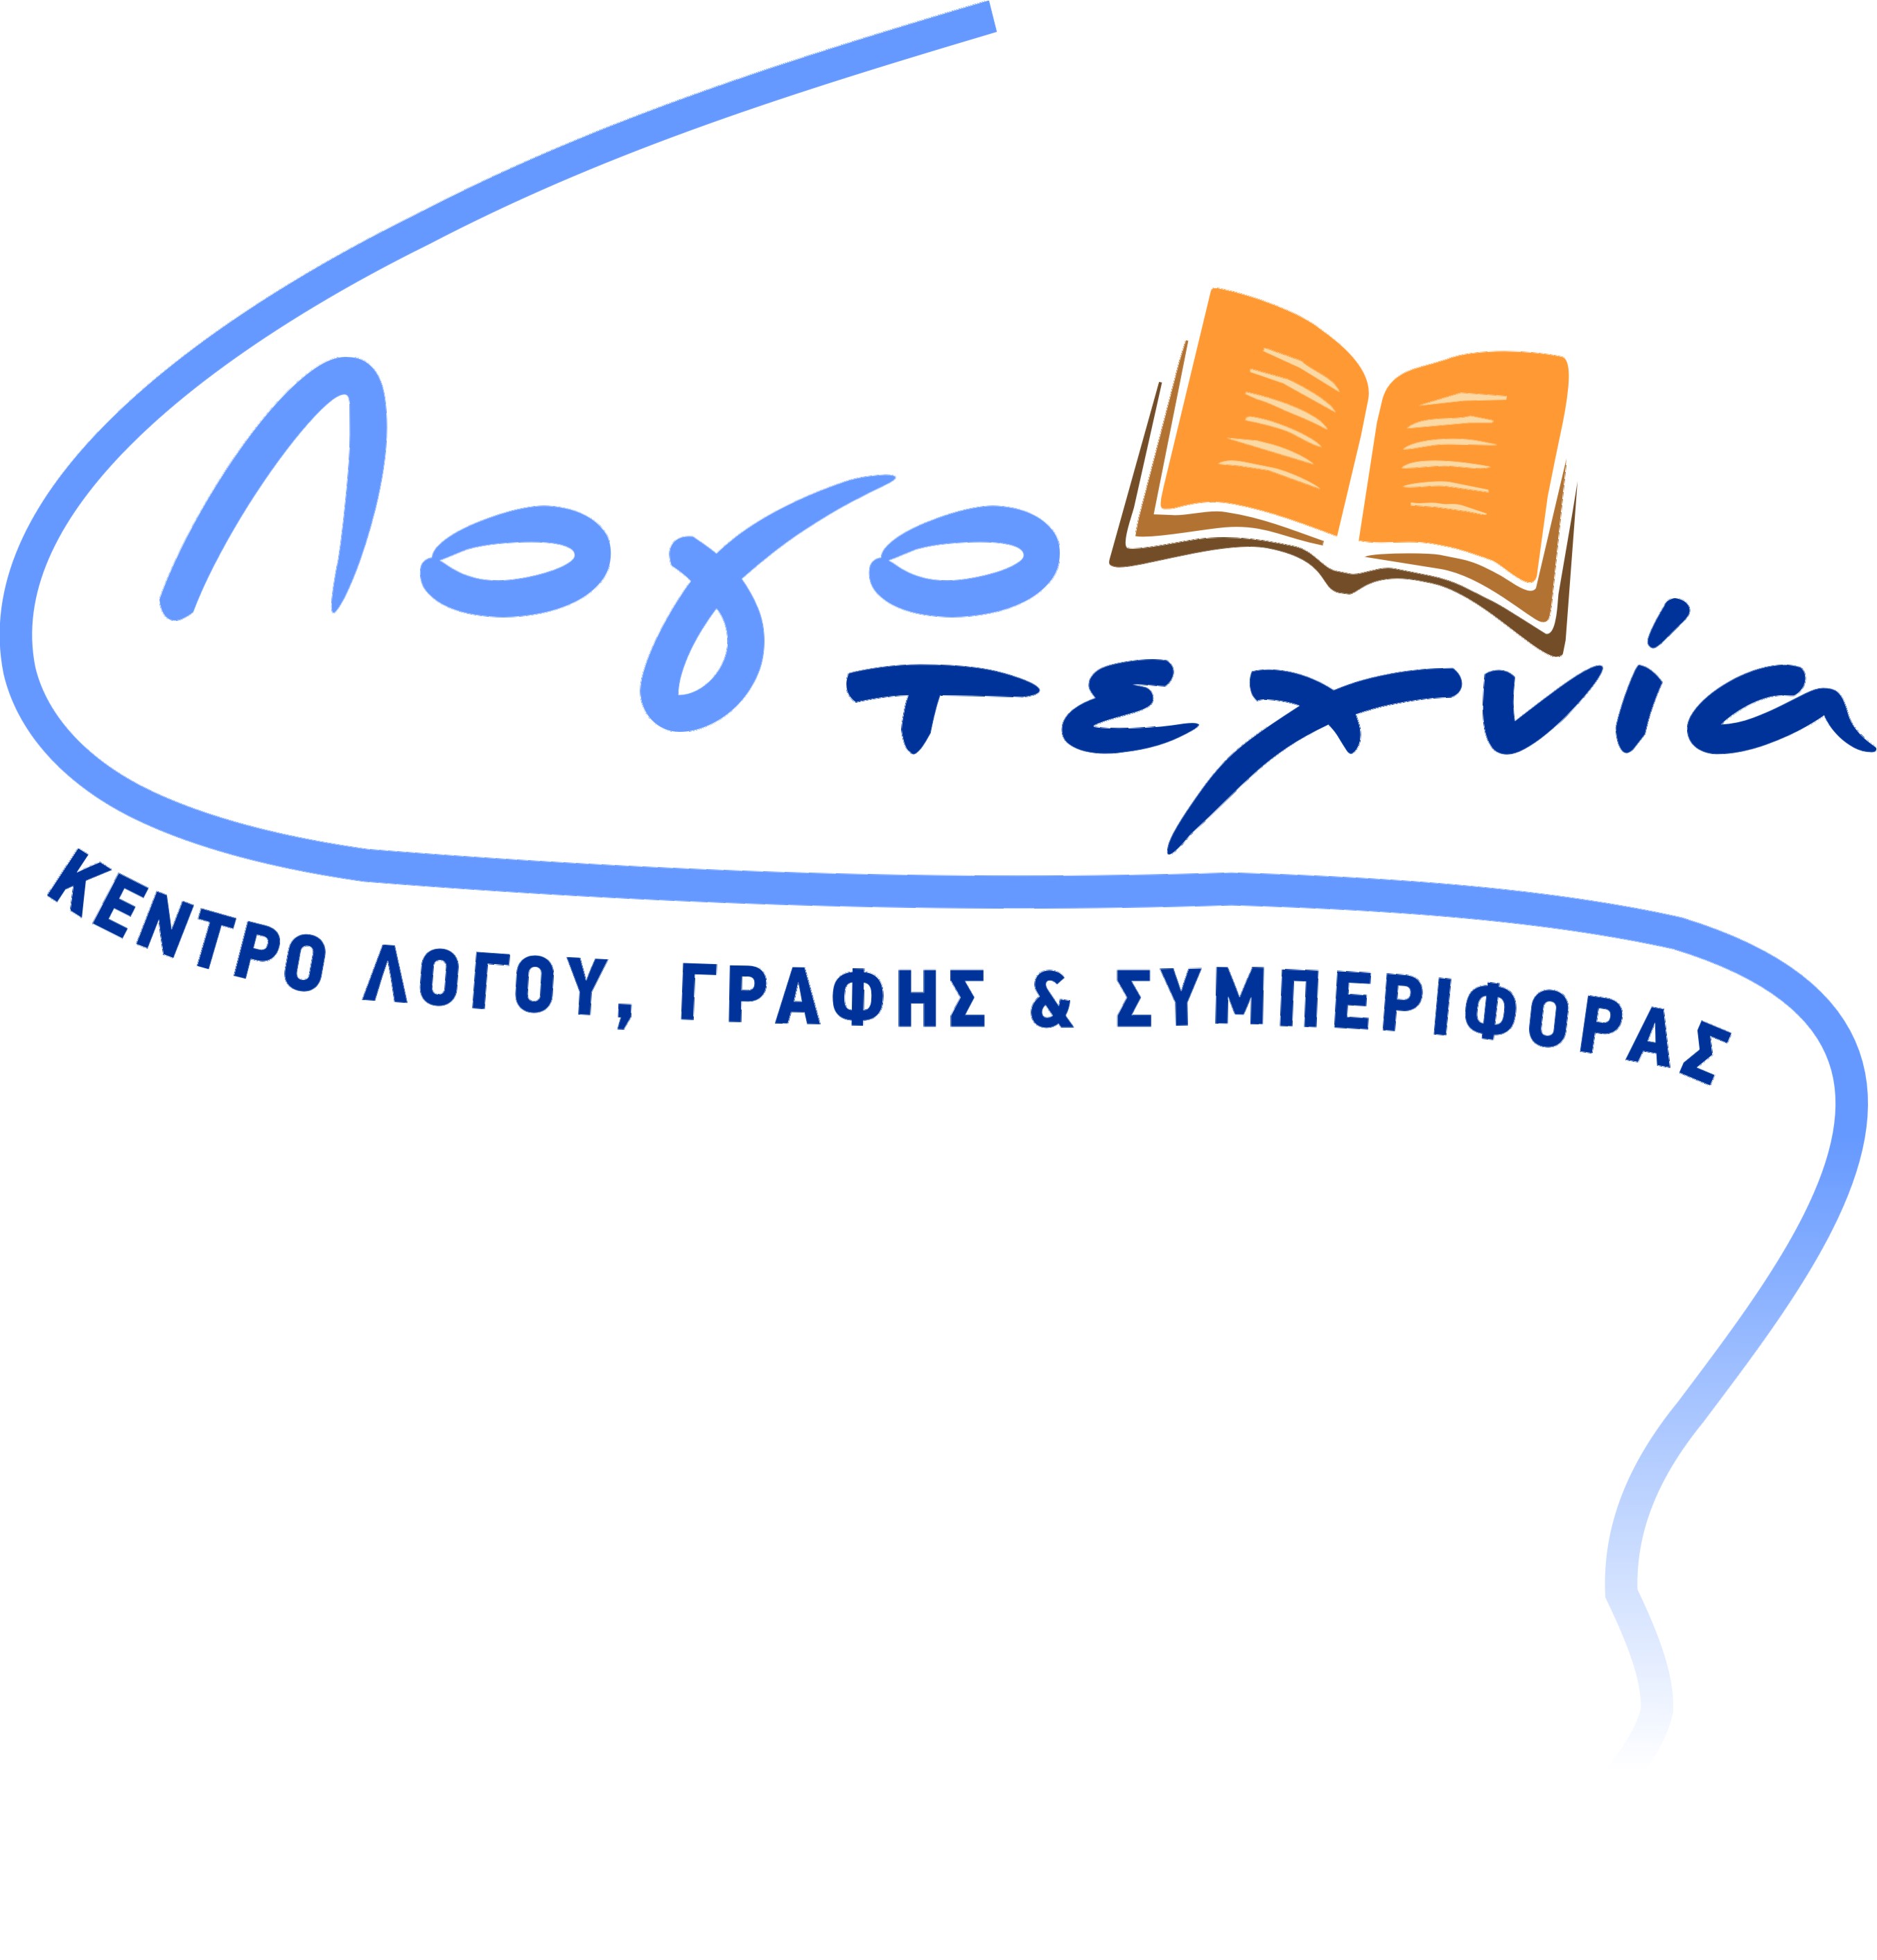 Λογότυπο του Κέντρου Λόγου Γραφής και Συμπεριφοράς - ΛΟΓΟΤΕΧΝΙΑ.